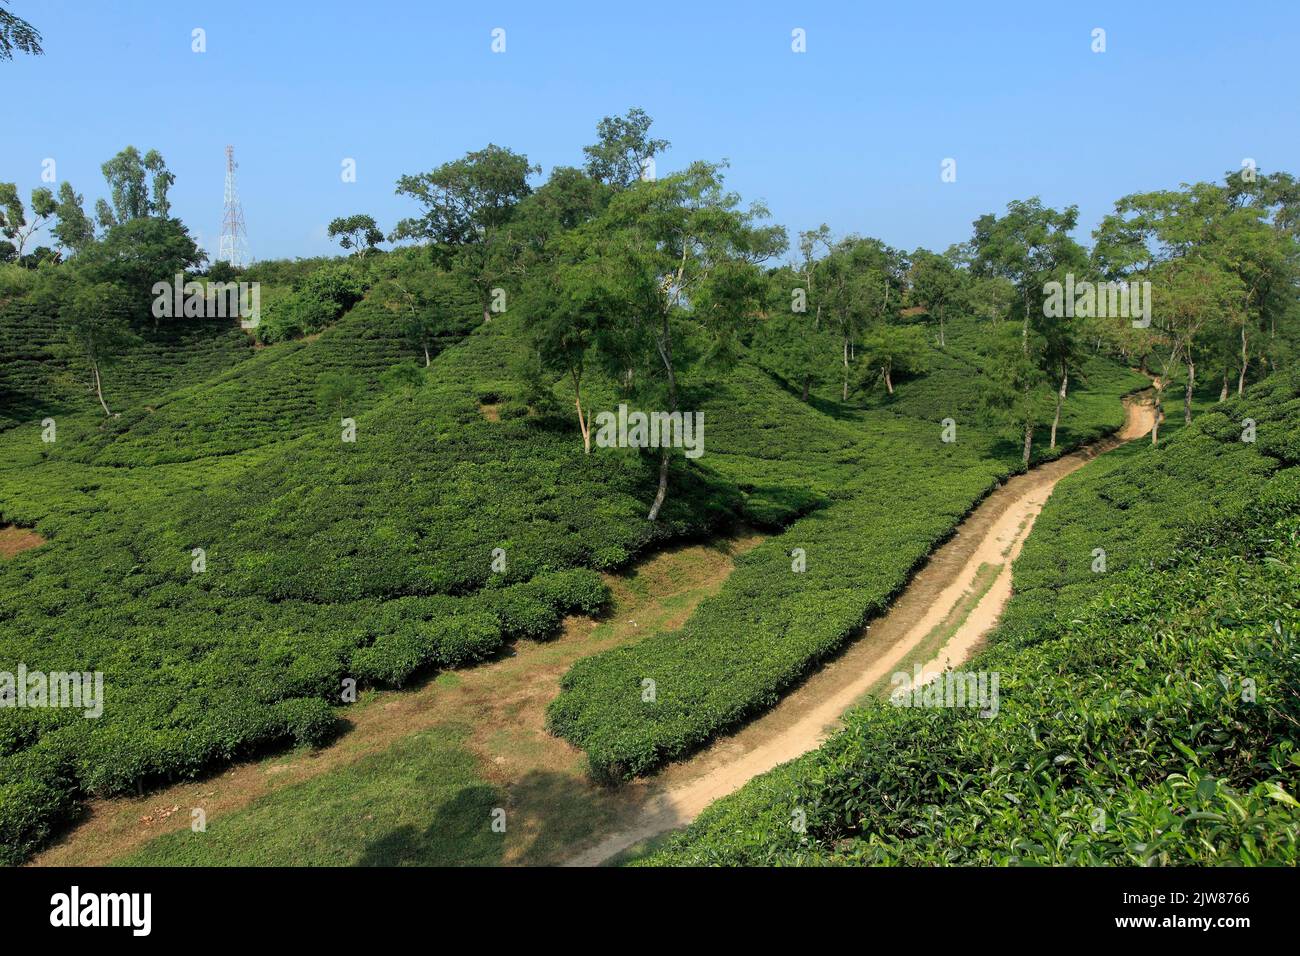 Tea Estate à Sremangal, Sylhet avec une production de plus de 3% de la production mondiale de thé, le Bangladesh est le 12th plus grand pays. Banque D'Images